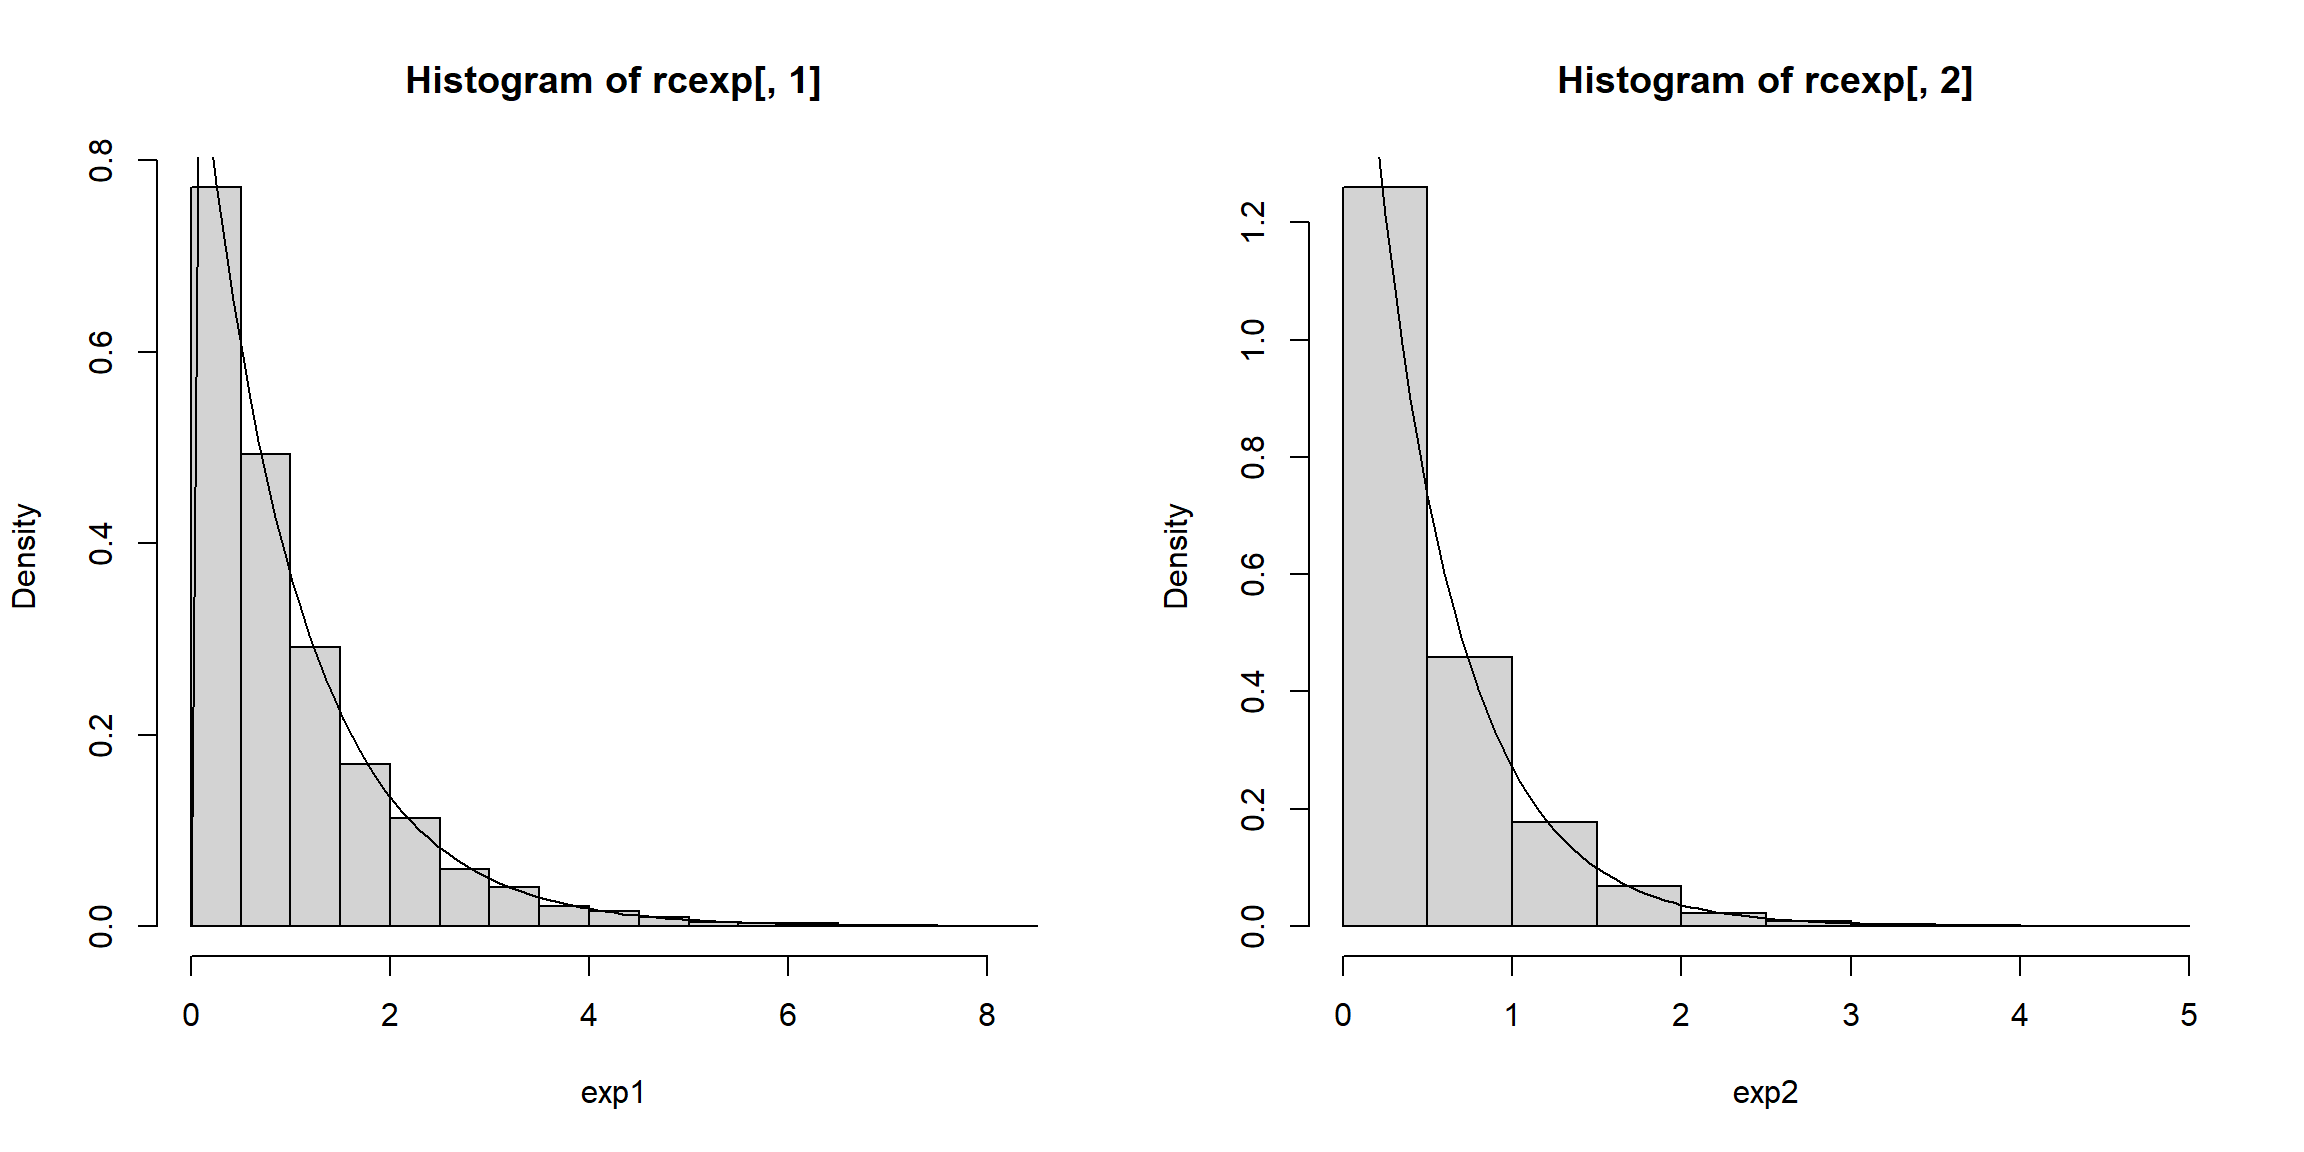 Distribuciones marginales exponenciales de los valores generados con dependencia definida por la cópula de Clayton.